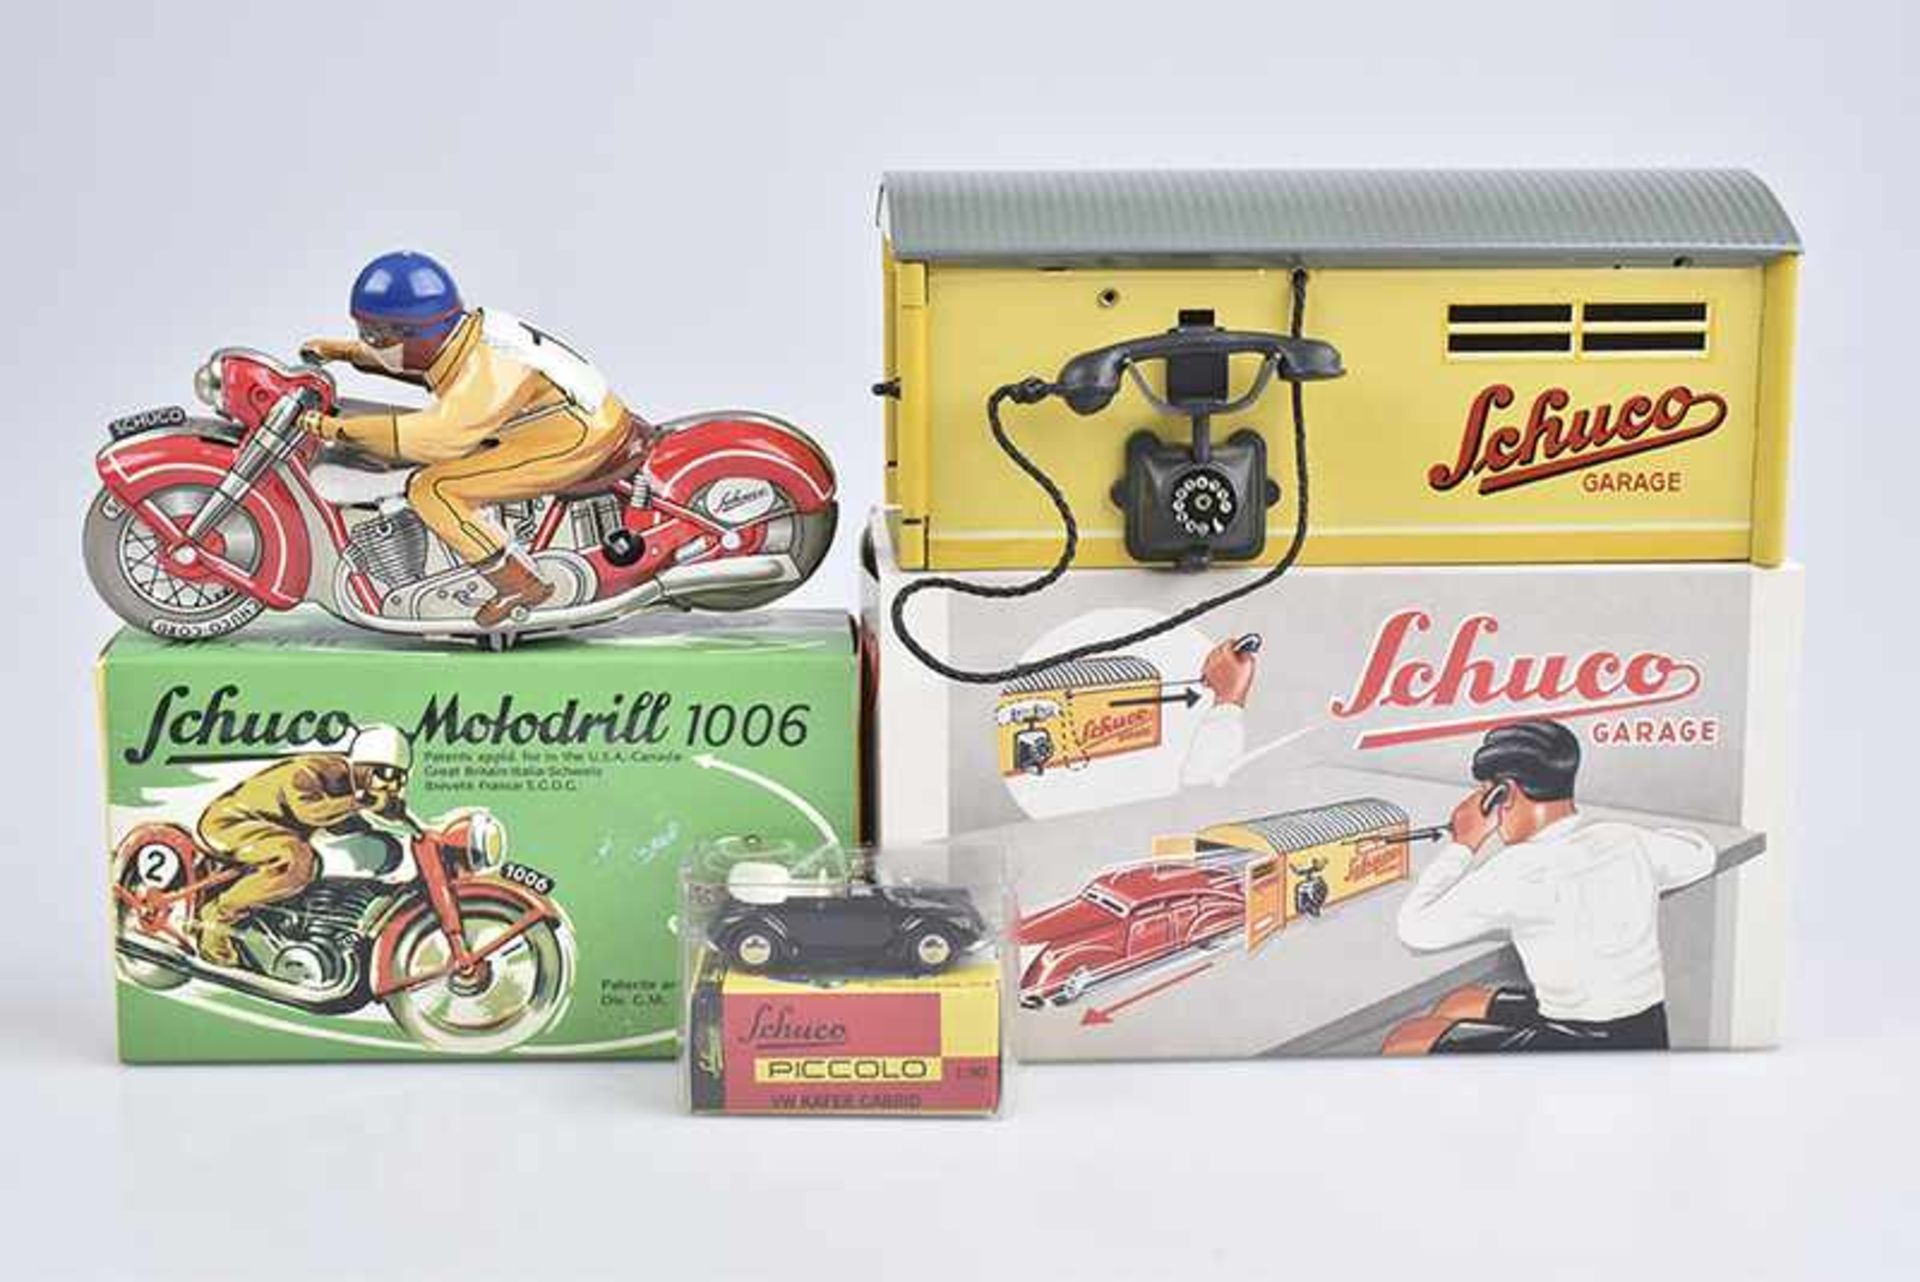 Konv. 3 Teile, SCHUCO, Blech, L 5-15,5 cm, SCHUCO Garage 1500, mit Telefon-/Türöffner, Motodrill